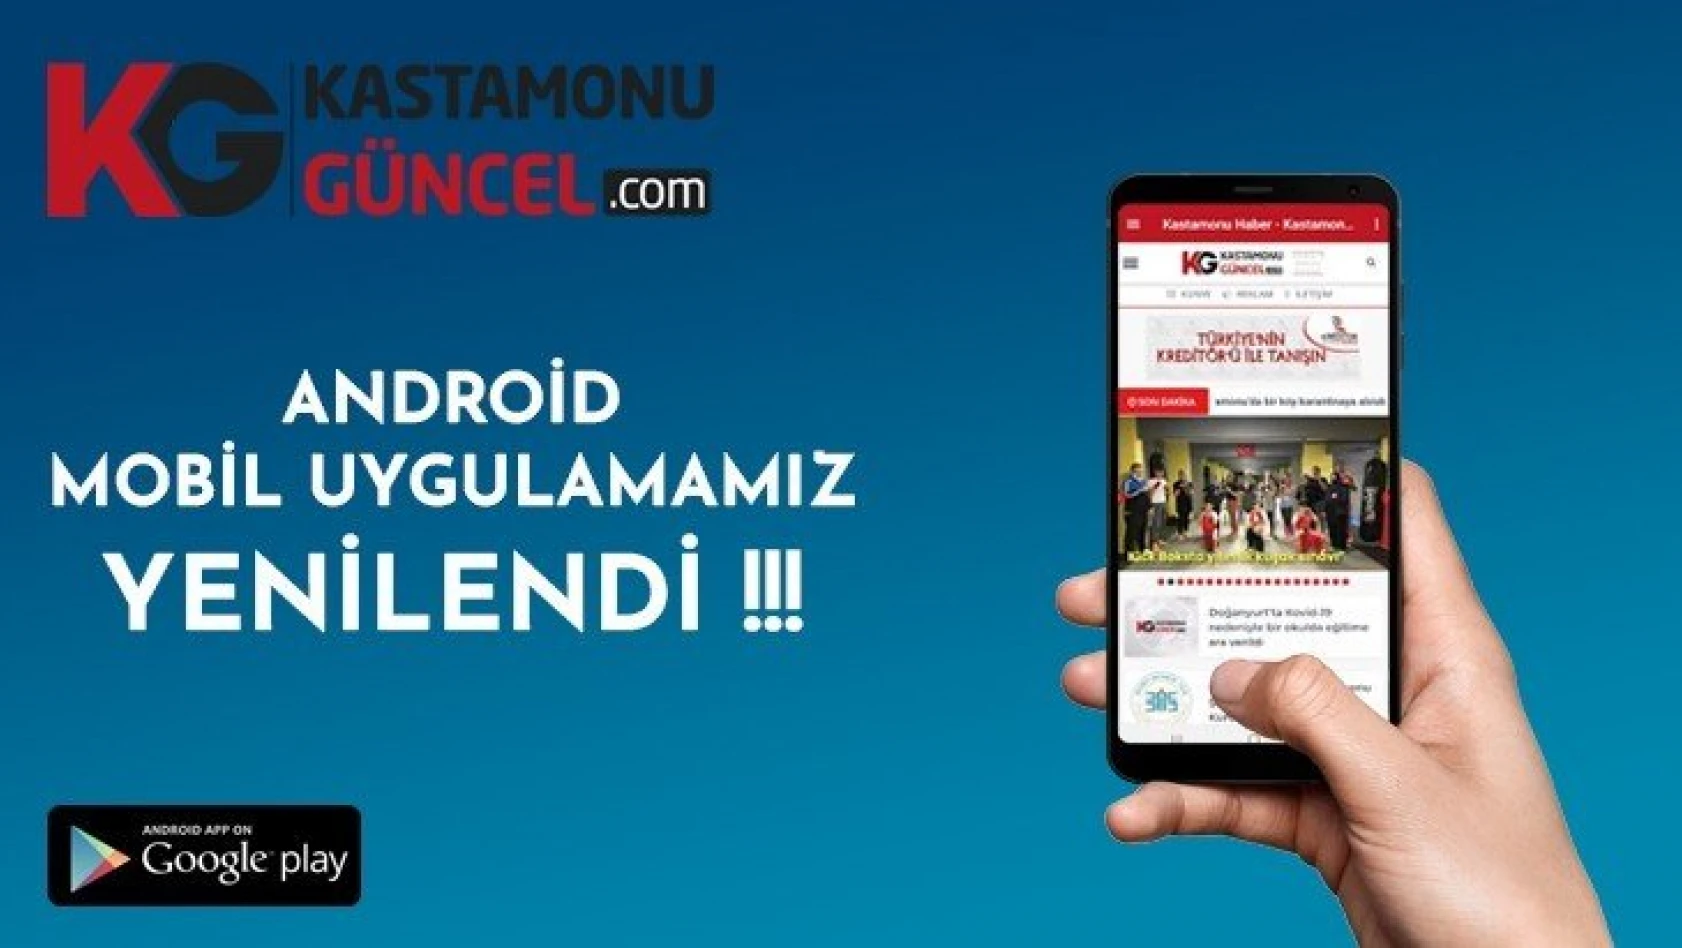 Kastamonu Güncel'in Android mobil uygulaması yenilendi